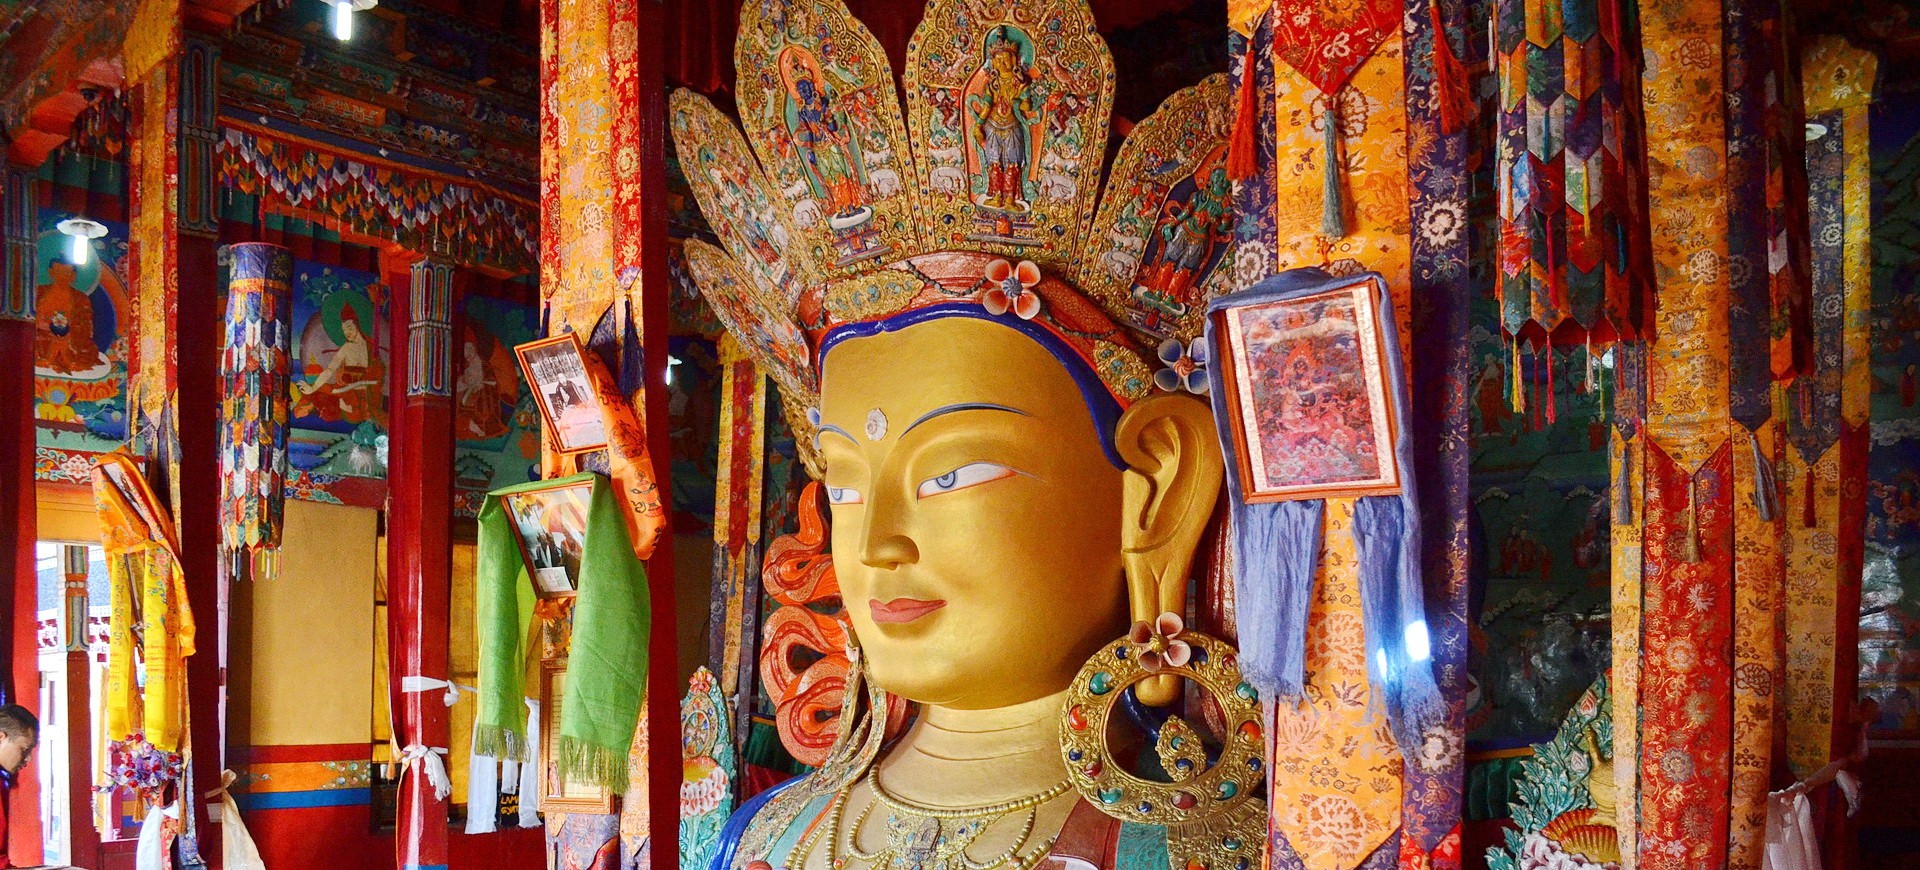 Statue de Bouddah dans le Monastère Bouddhiste à Thiksey à Leh au Ladakh